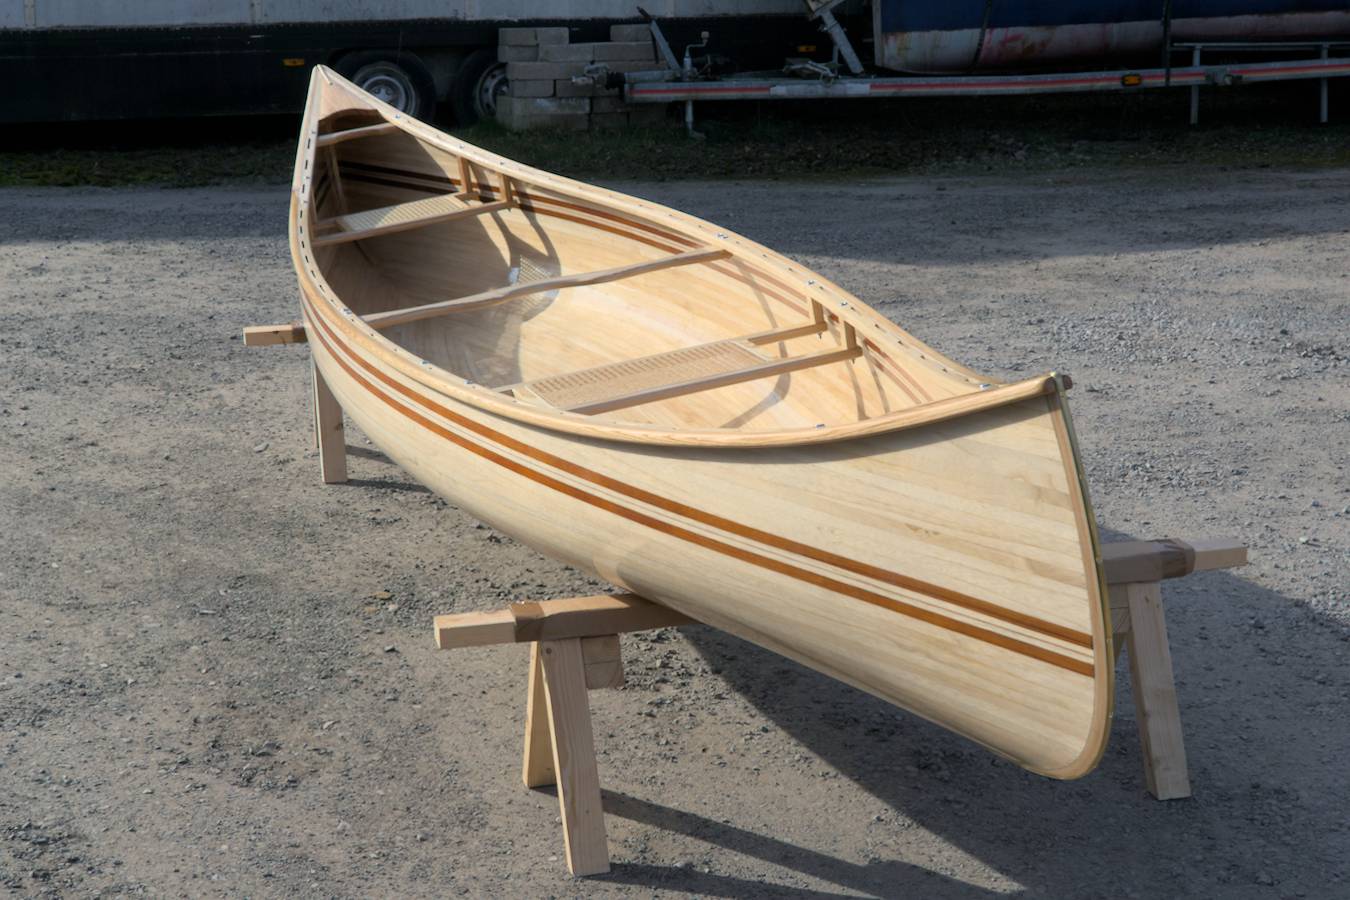 Ranger 15 canoe built using paulownia strips